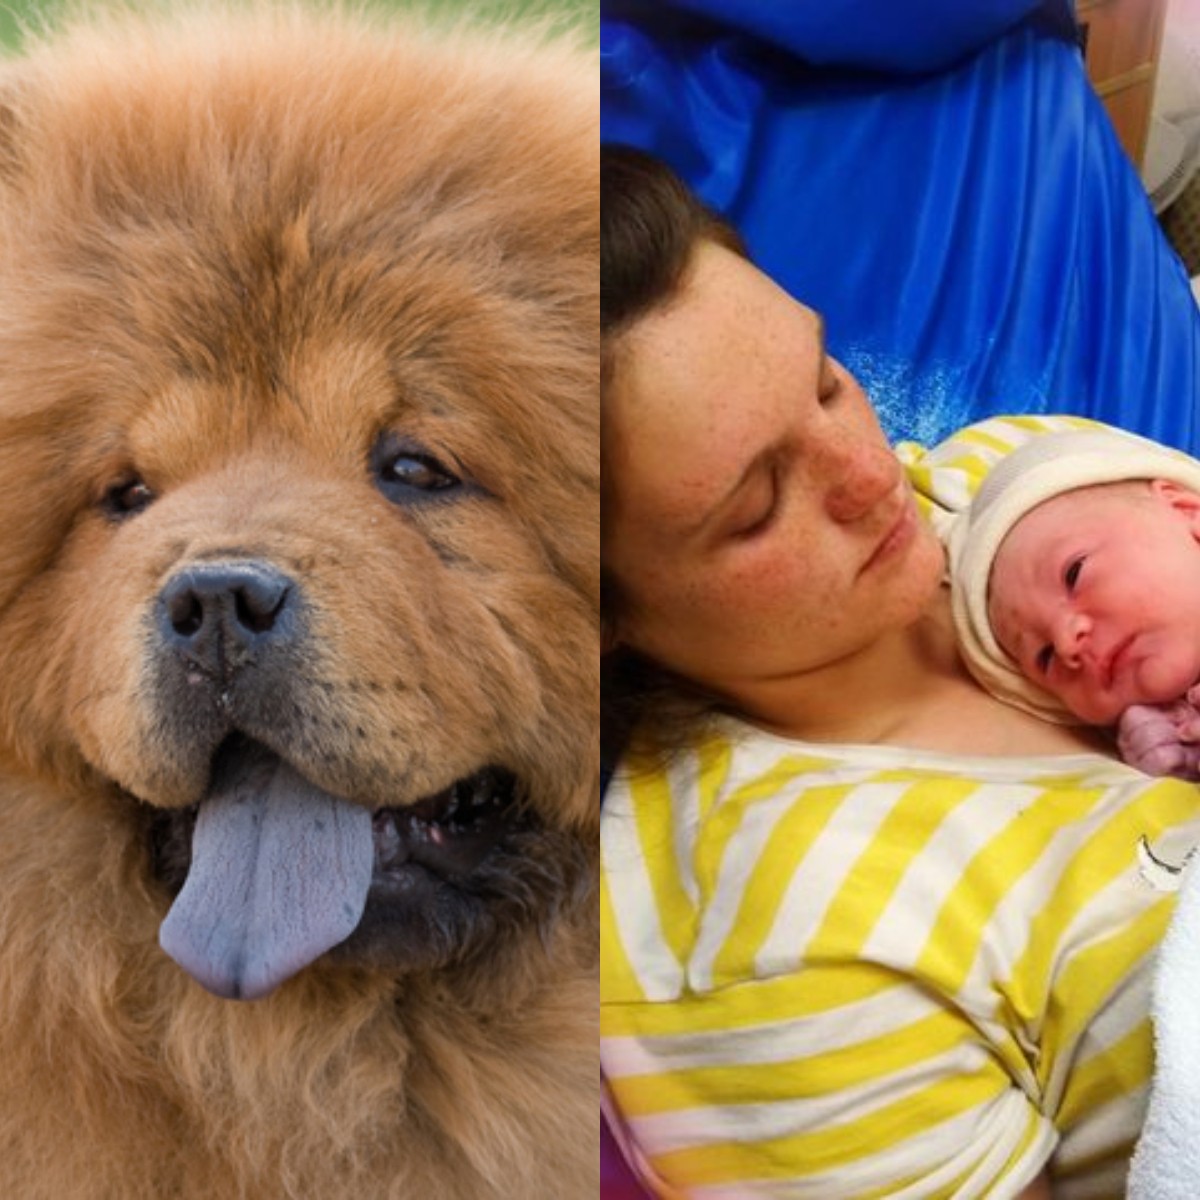 À esquerda, foto de um cachorro da raça Chow Chow meramente ilustrativa. À direita, Abigail com o seu filho recém-nascido Elon (Foto: Reprodução/Instagram)